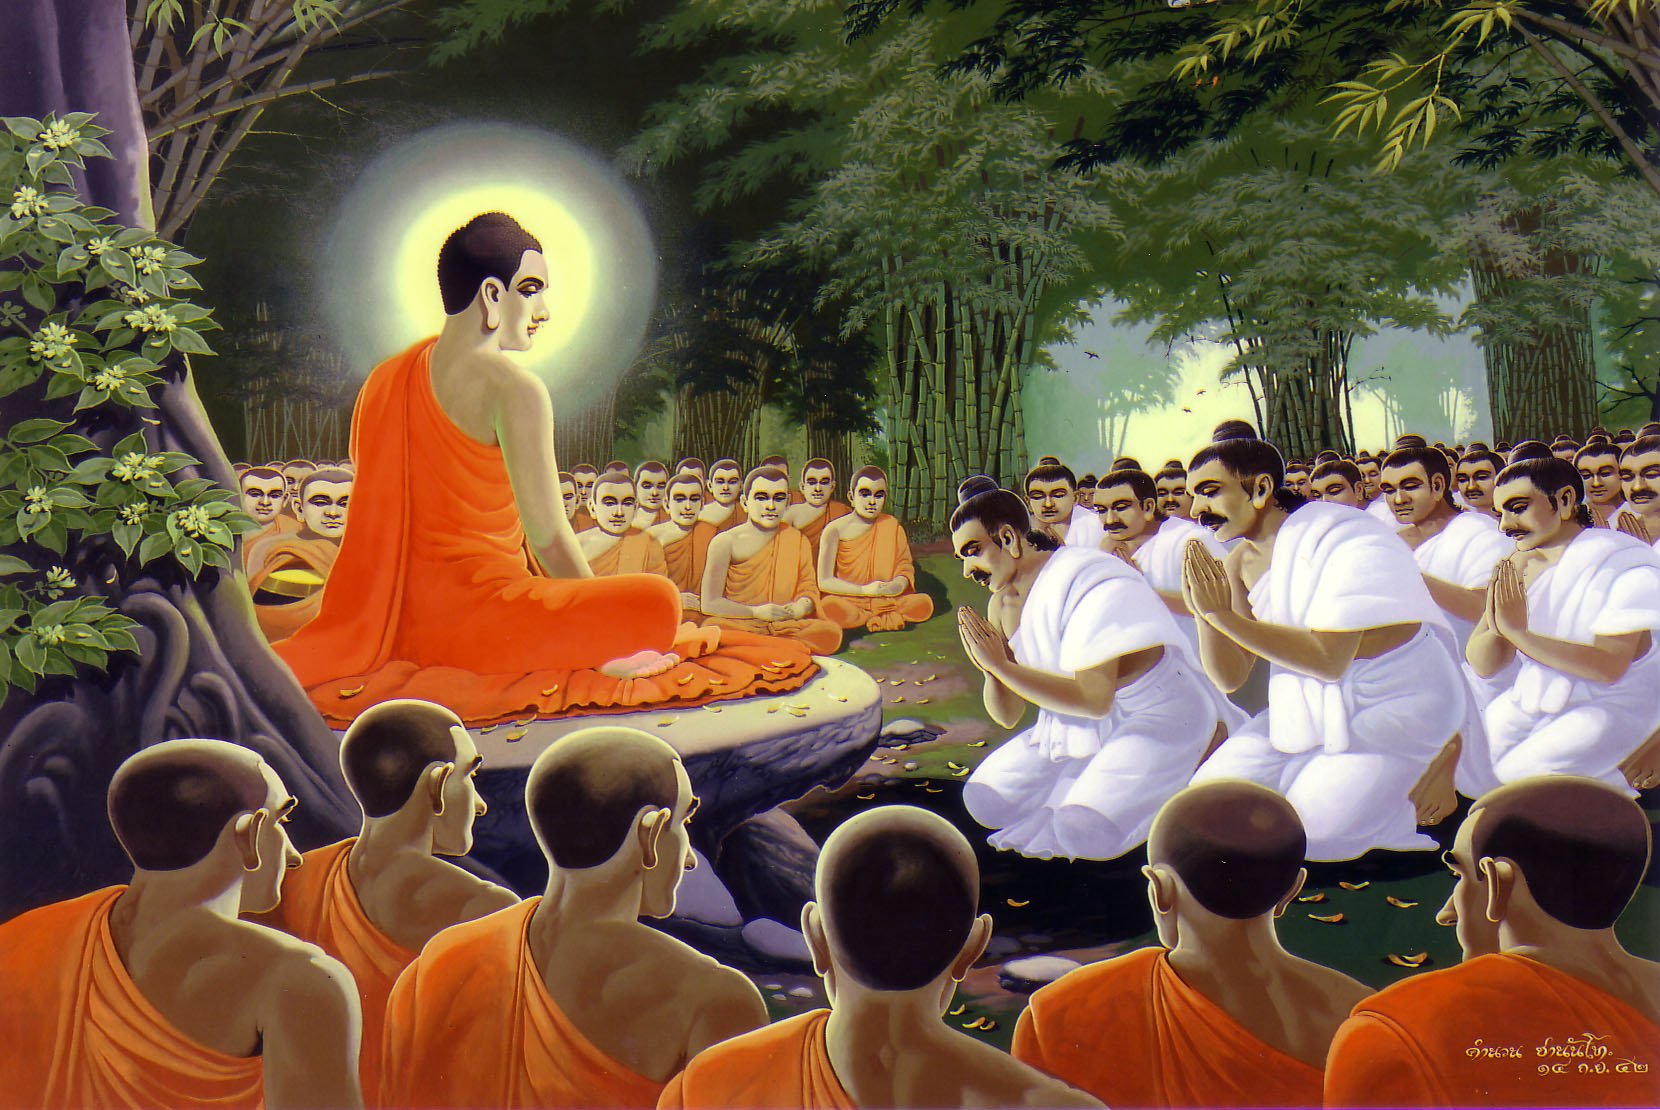 Проповедь будды. Буддизм Сиддхартха Гаутама. Будда Сиддхартха Гаутама Шакьямуни. Сиддхартха Гаутама с учениками. Основатель Сиддхартха Гаутама Будда буддизм.